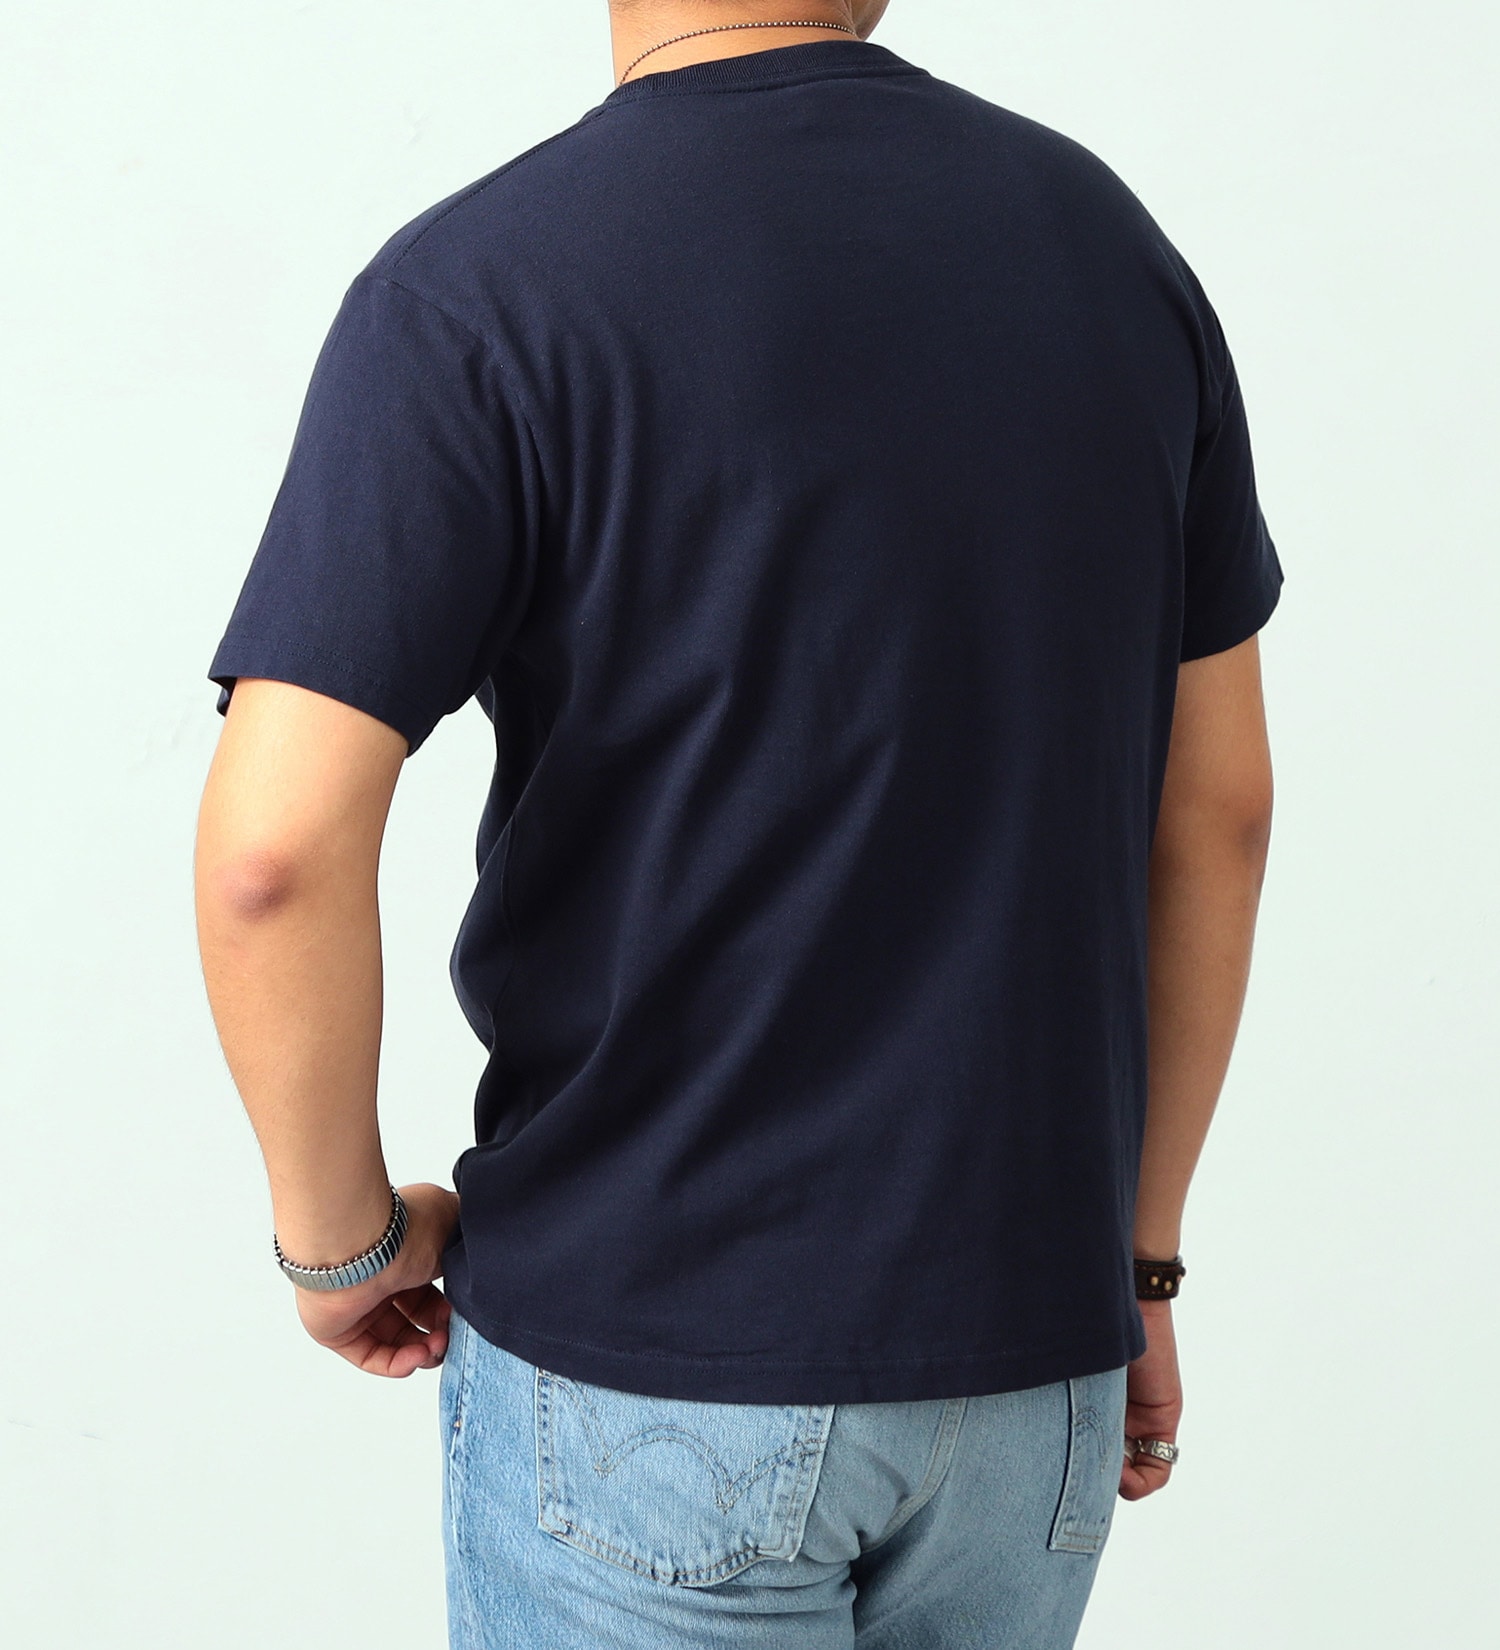 EDWIN(エドウイン)のポケットボックスロゴ半袖Tシャツ【アウトレット店舗・WEB限定】|トップス/Tシャツ/カットソー/メンズ|ネイビー